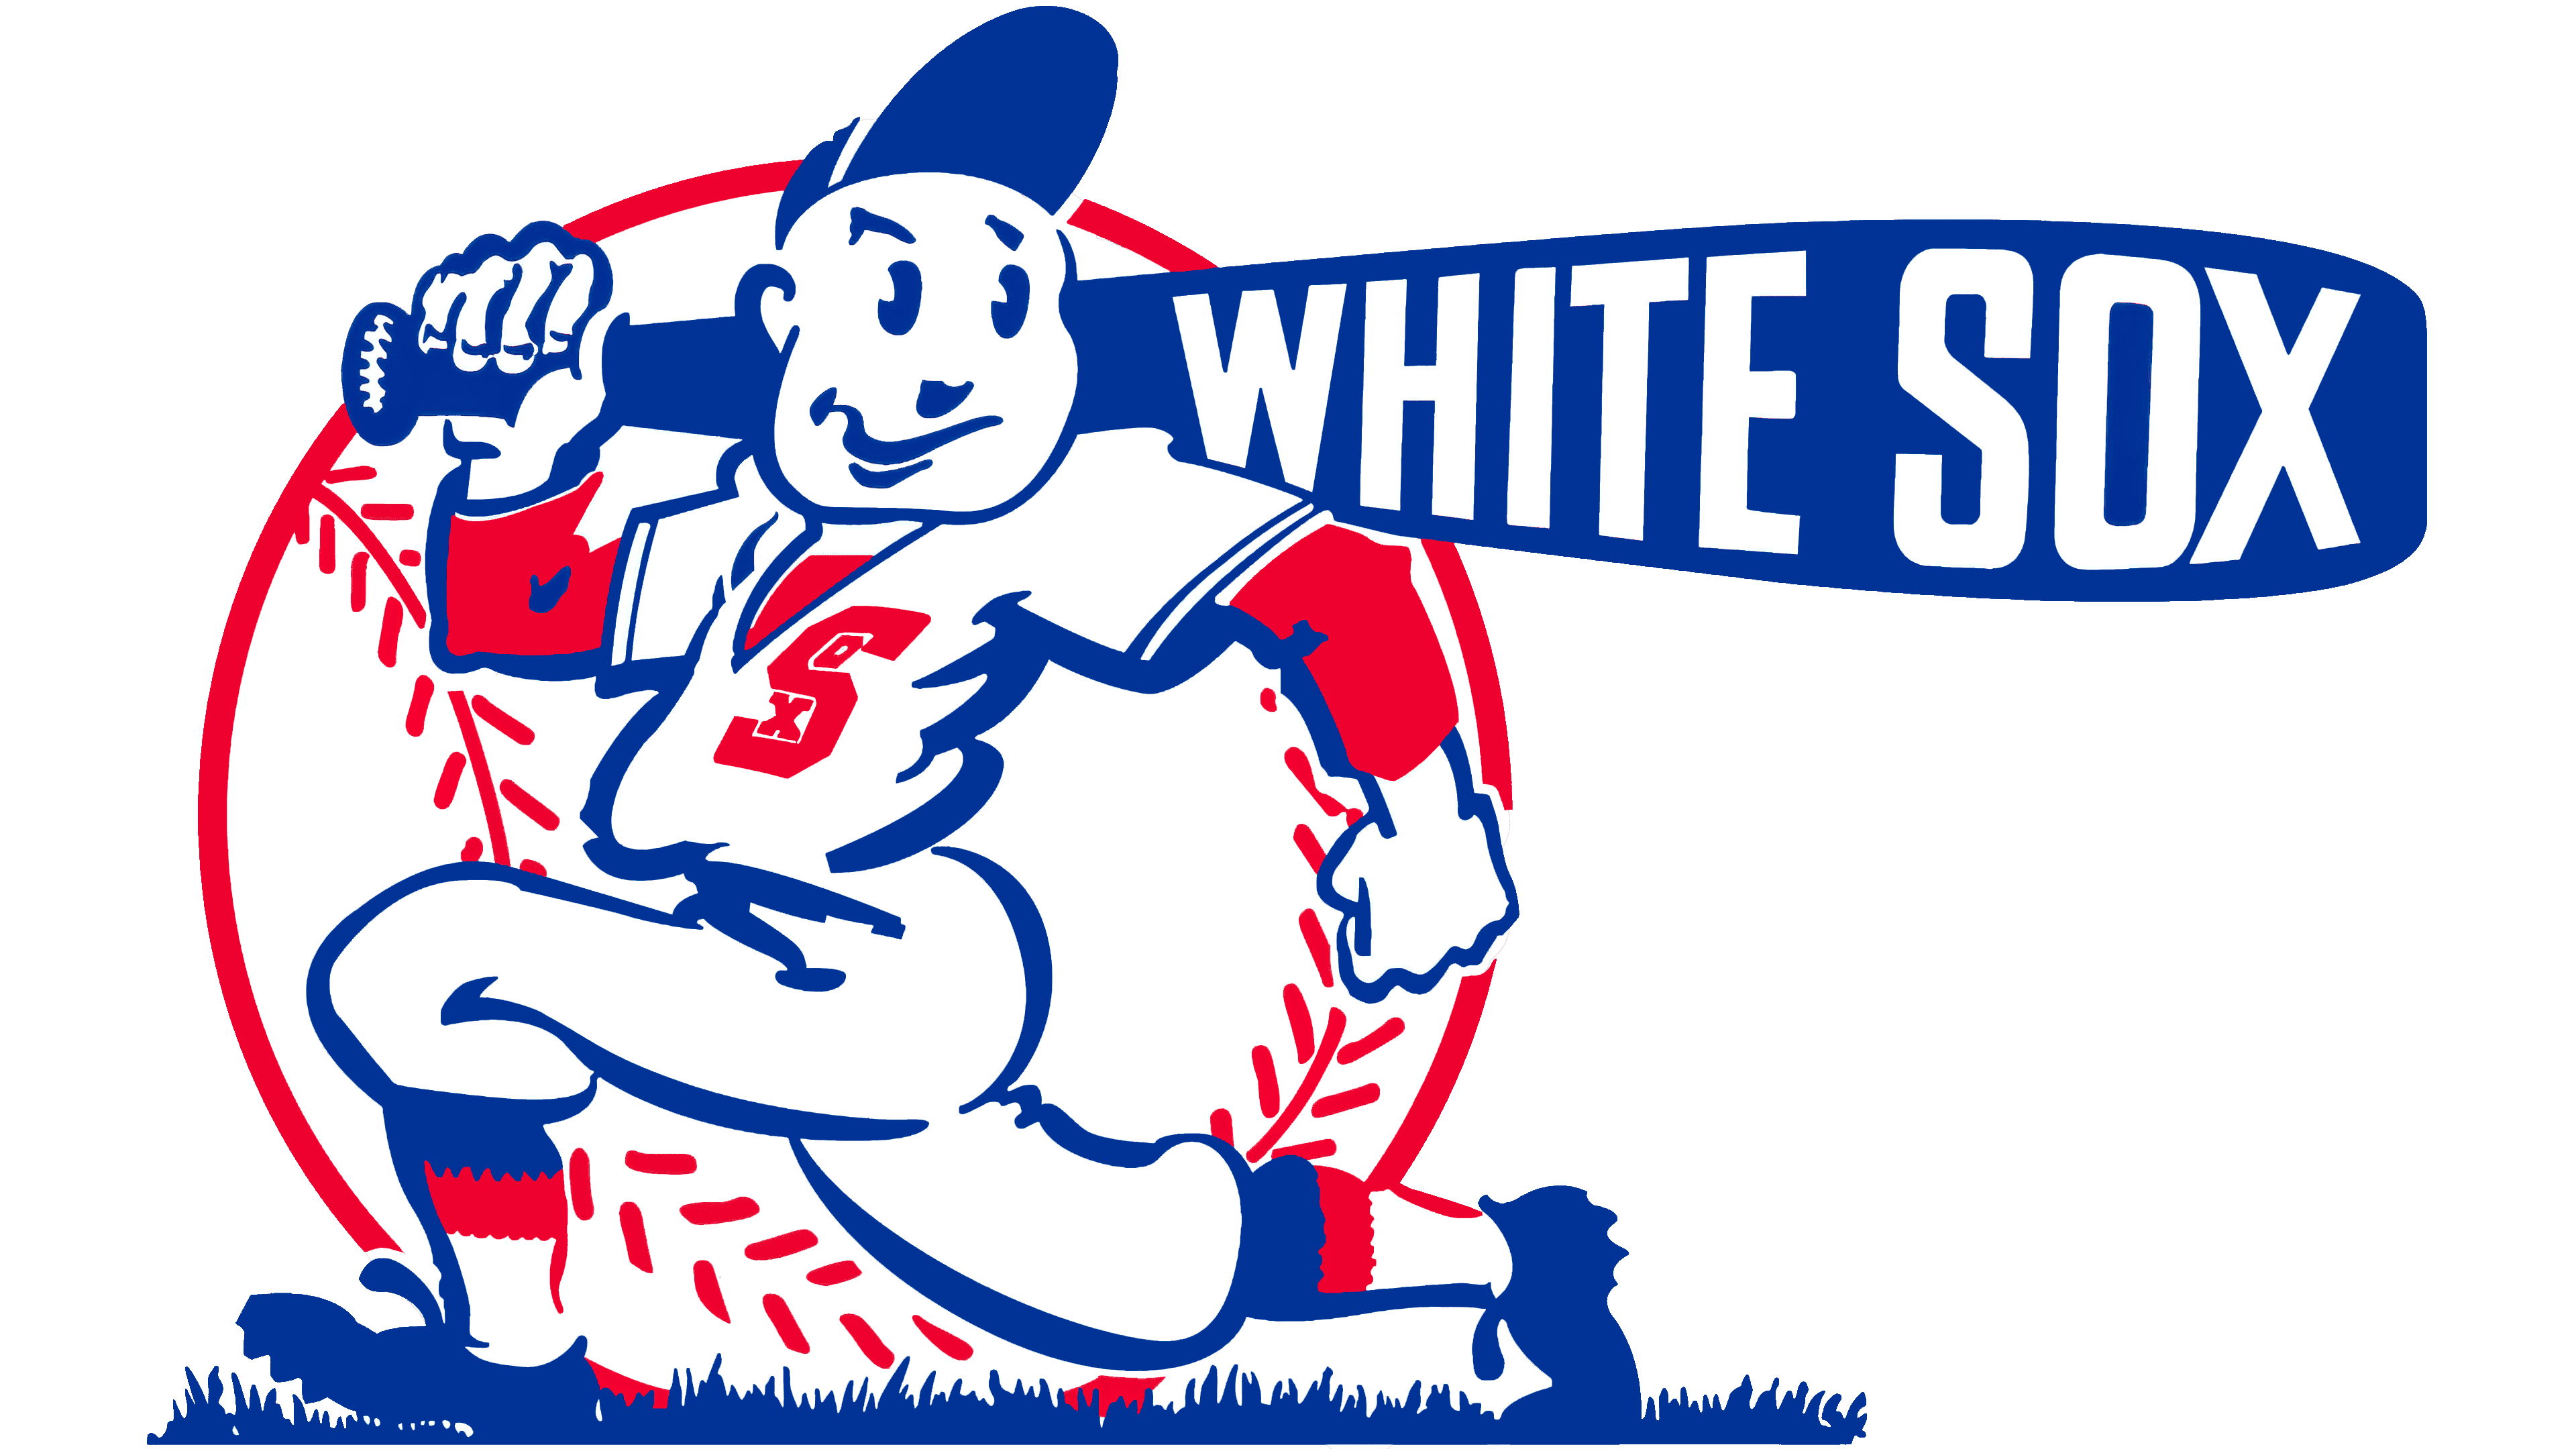 chicago-white-sox-wikipedia